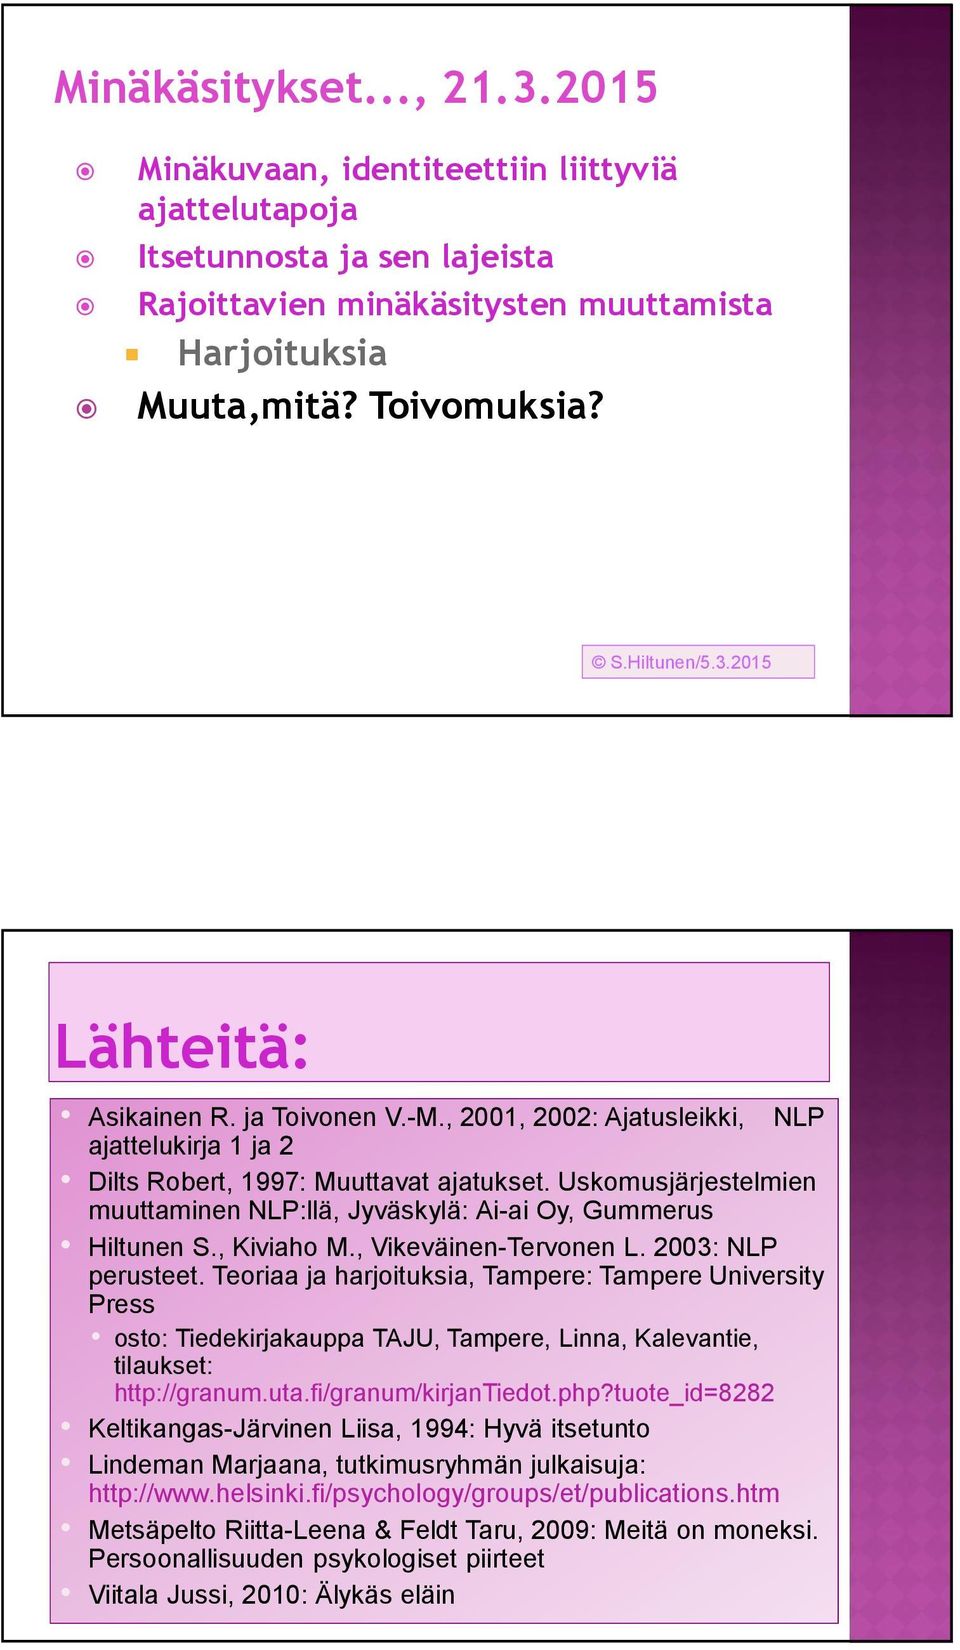 Uskomusjärjestelmien muuttaminen NLP:llä, Jyväskylä: Ai-ai Oy, Gummerus Hiltunen S., Kiviaho M., Vikeväinen-Tervonen L. 2003: NLP perusteet.